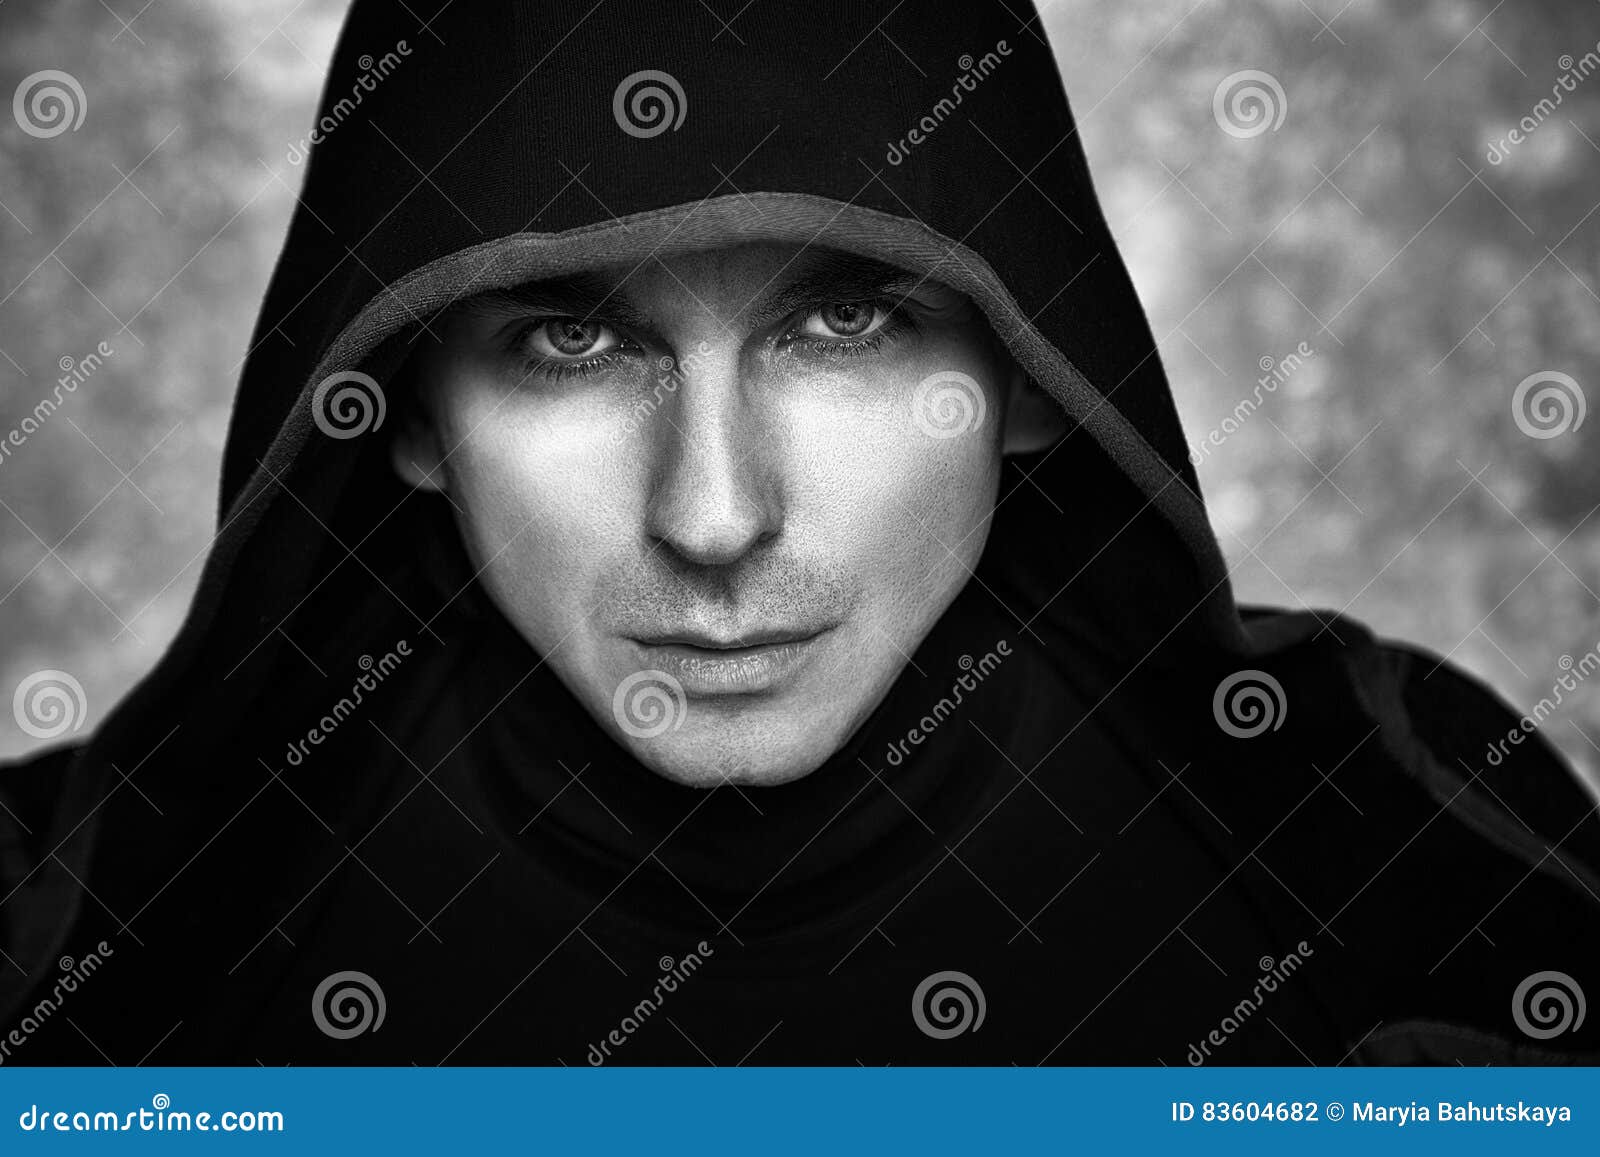 mysterious man in black hoodie. fantasy guy.